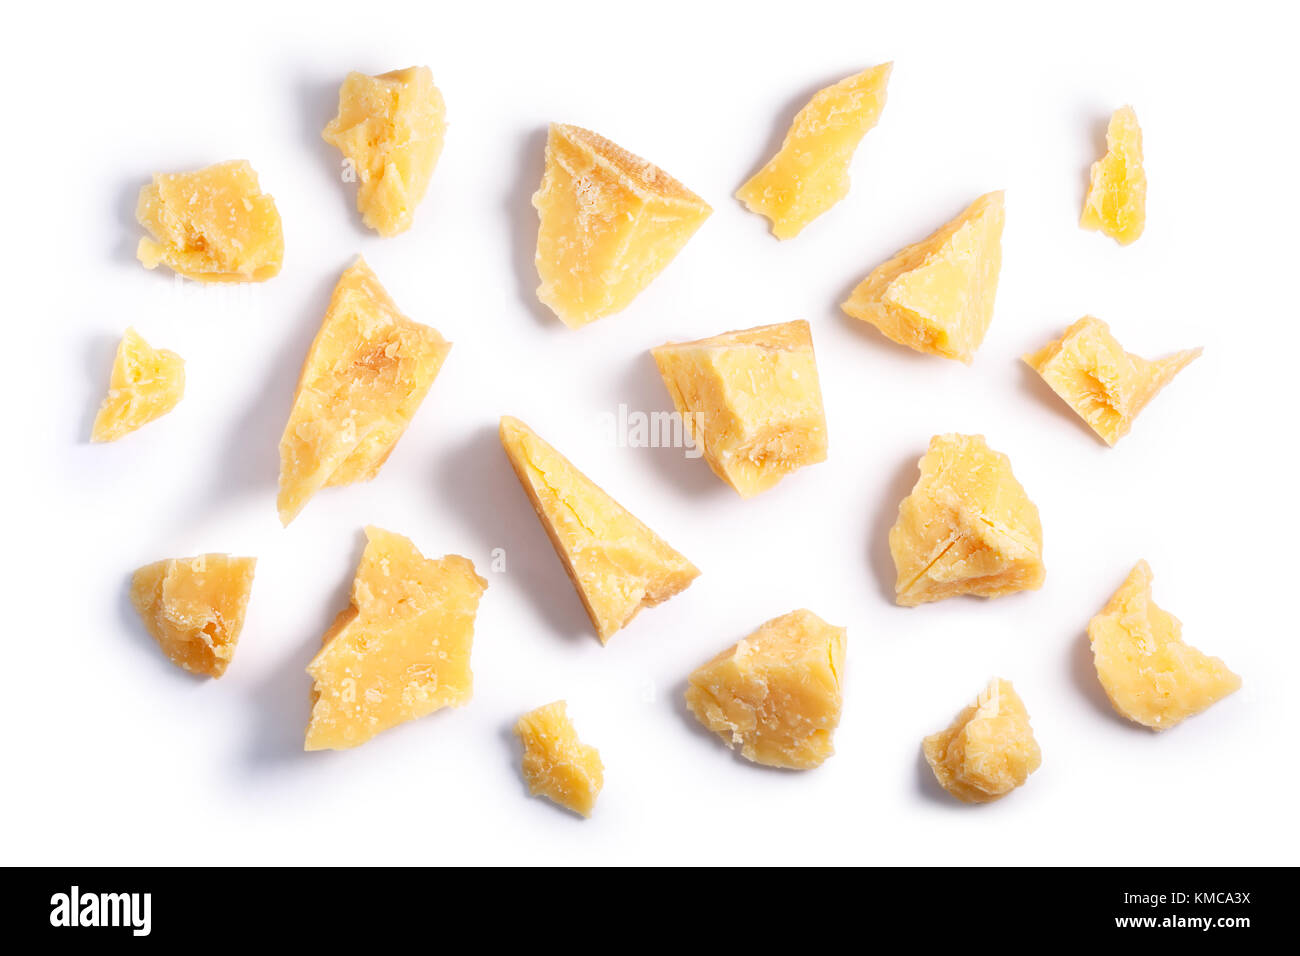 Harte reifen Käse (Parmesan, Parmigiano), grobe Stücke. Beschneidungspfade, Schatten getrennt, Ansicht von oben Stockfoto